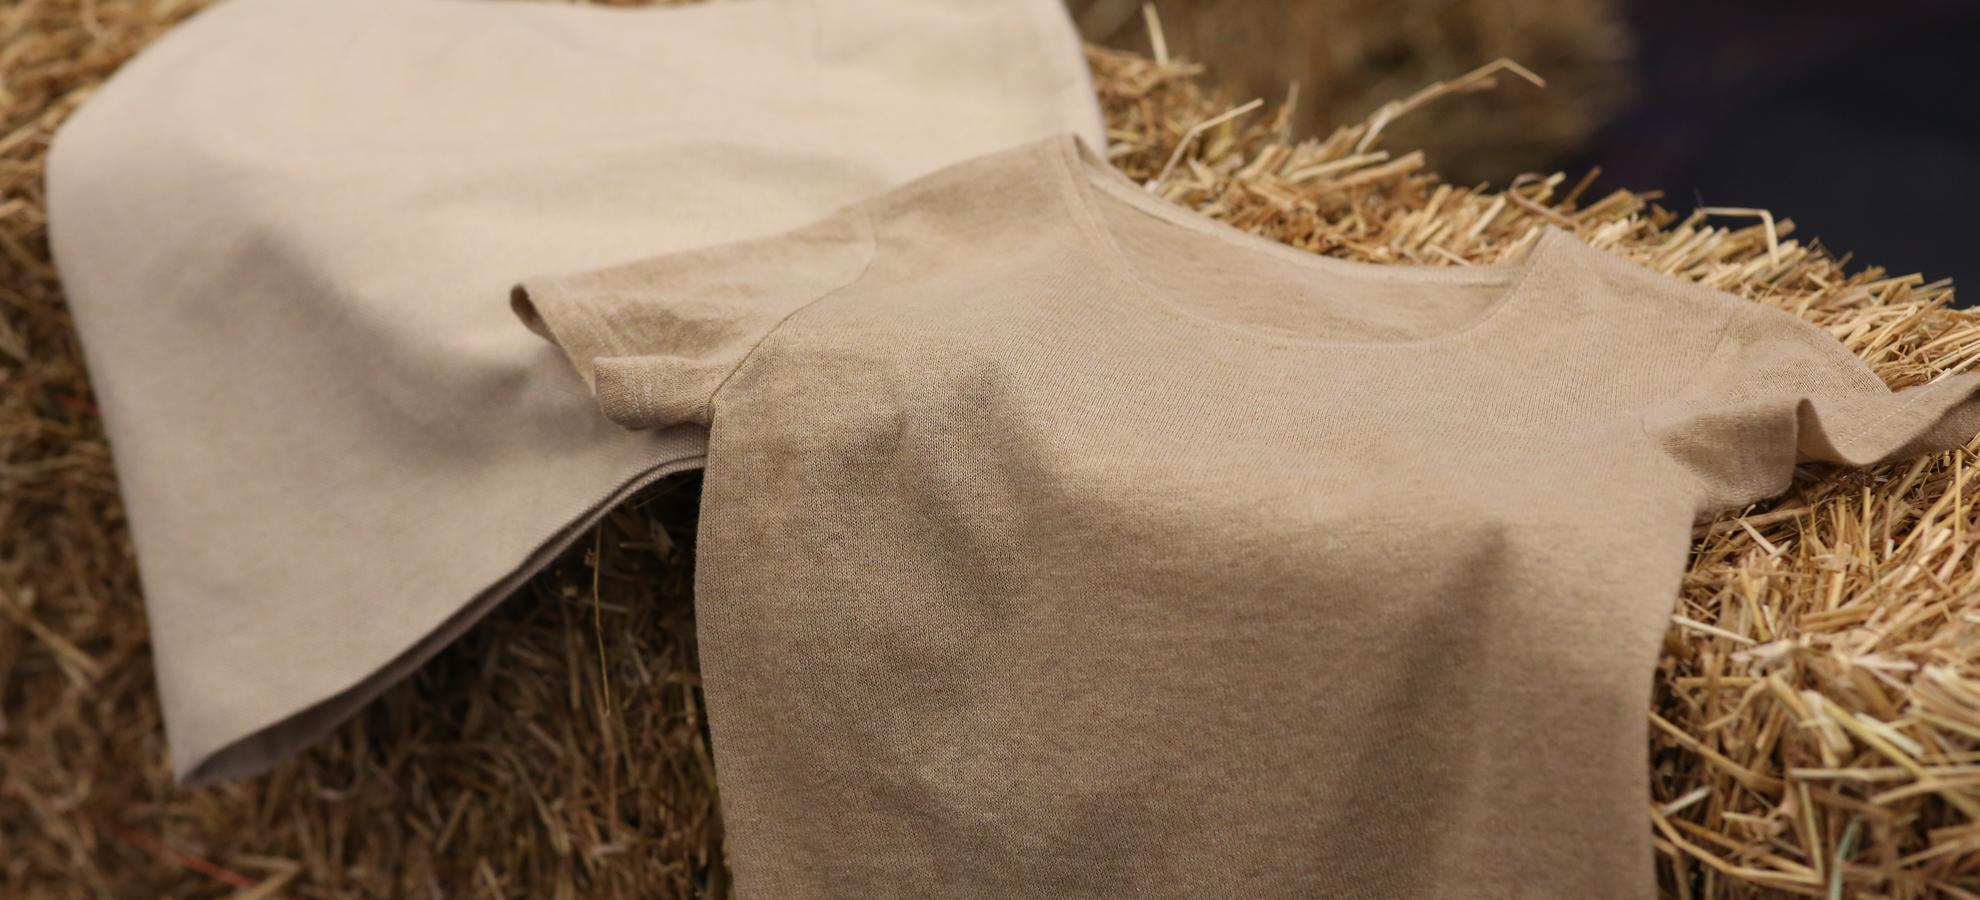 Fortum e Spinnova apresentam as primeiras roupas à base de palha de trigo do mundo